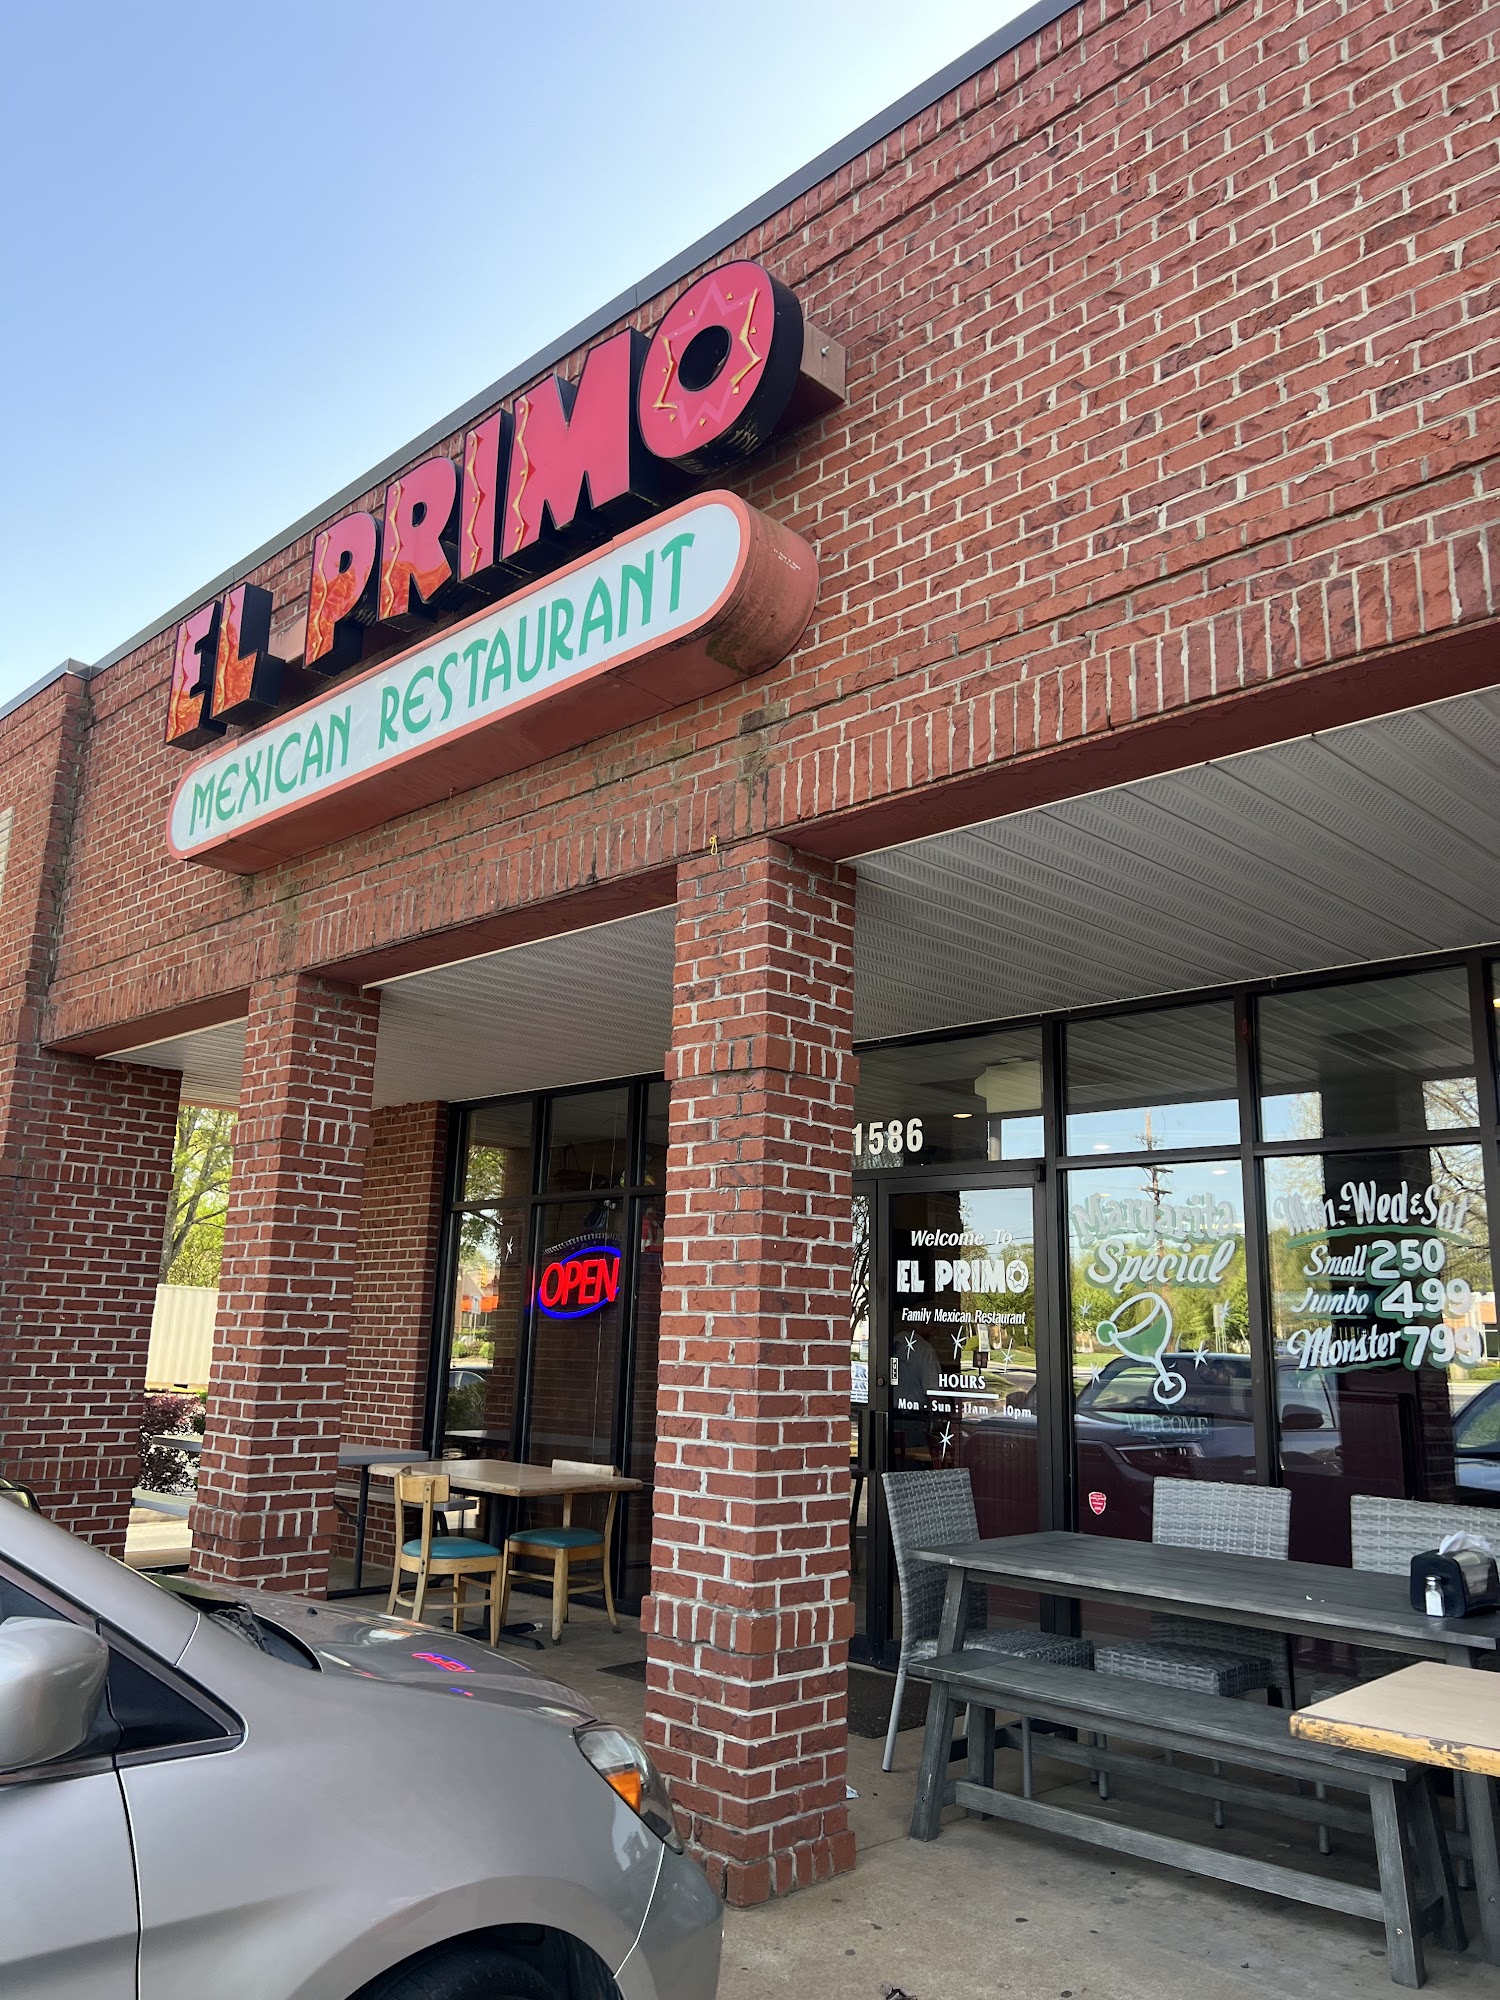 El Primo # 1 Mexican Restaurant